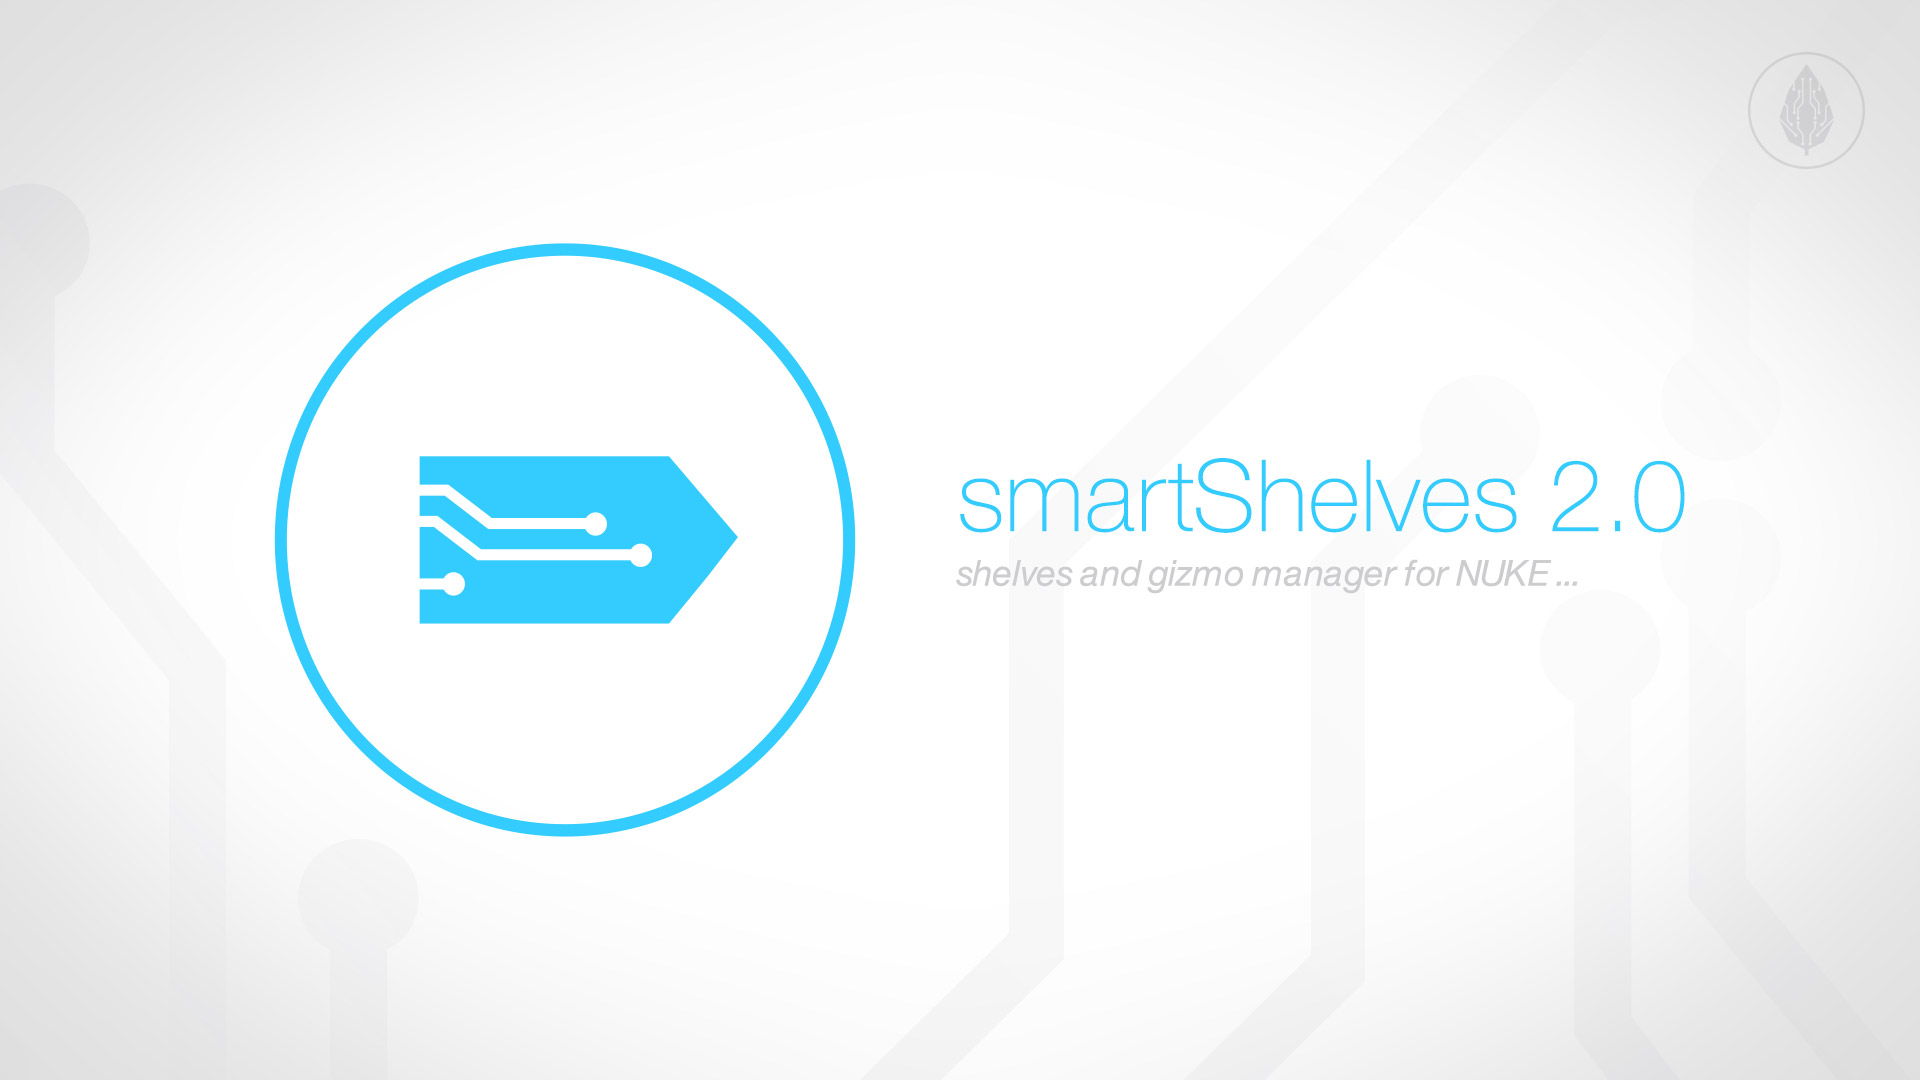 Published smartShelves 2.0